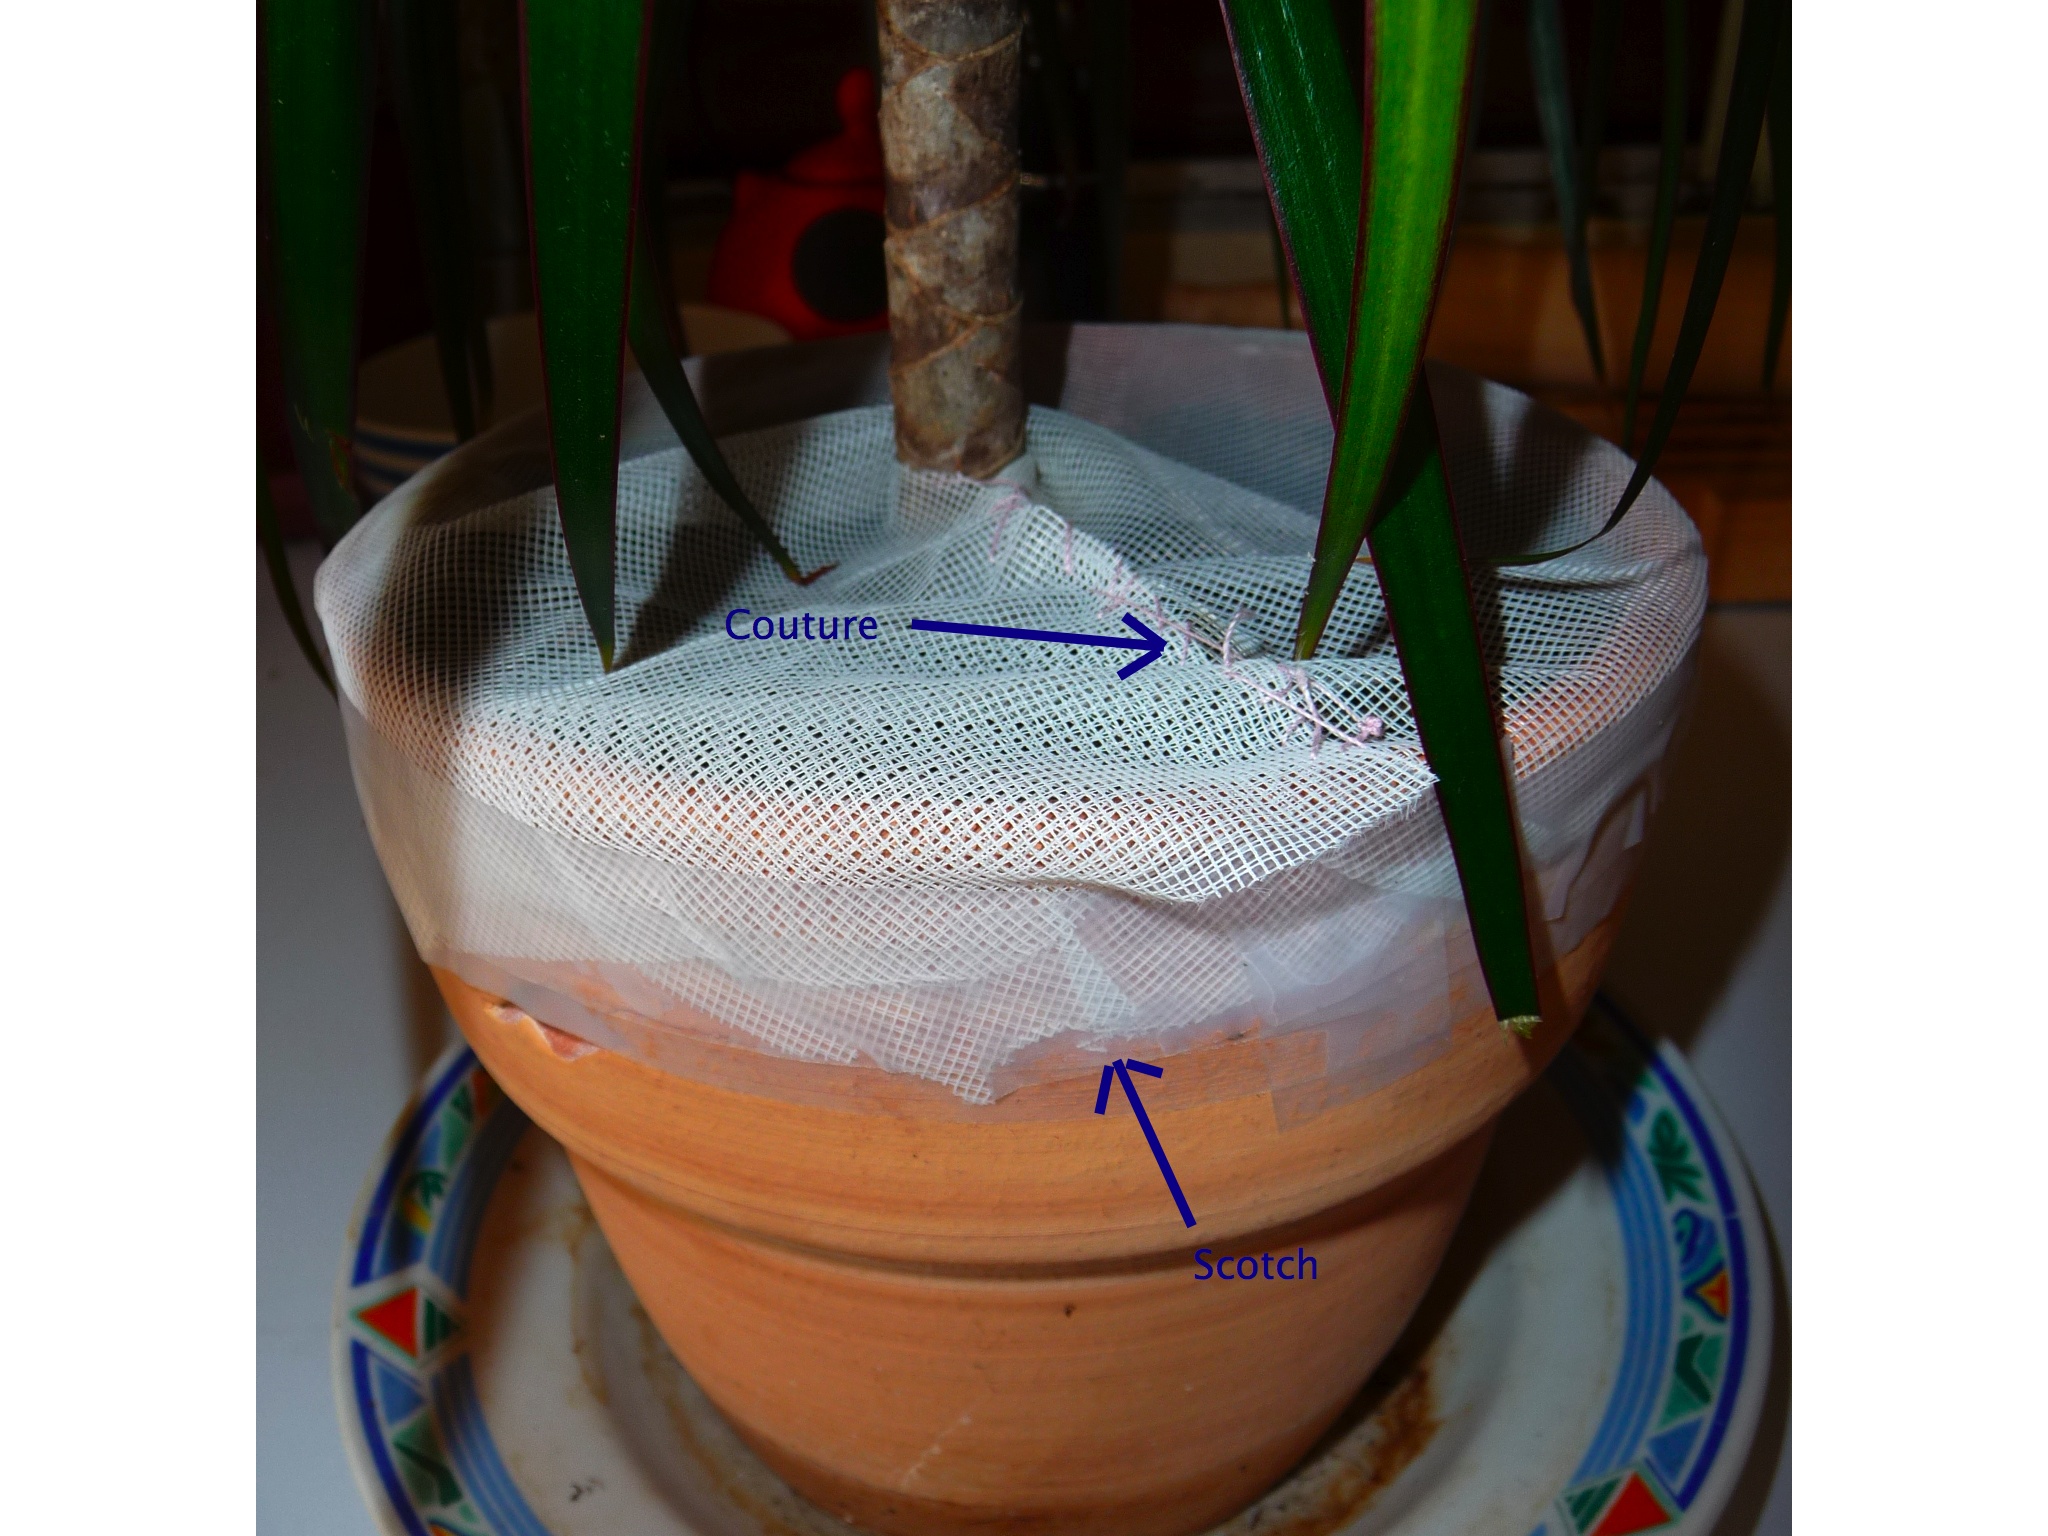 Comment se débarrasser des moucherons dans les plantes ? - SWAP Blog